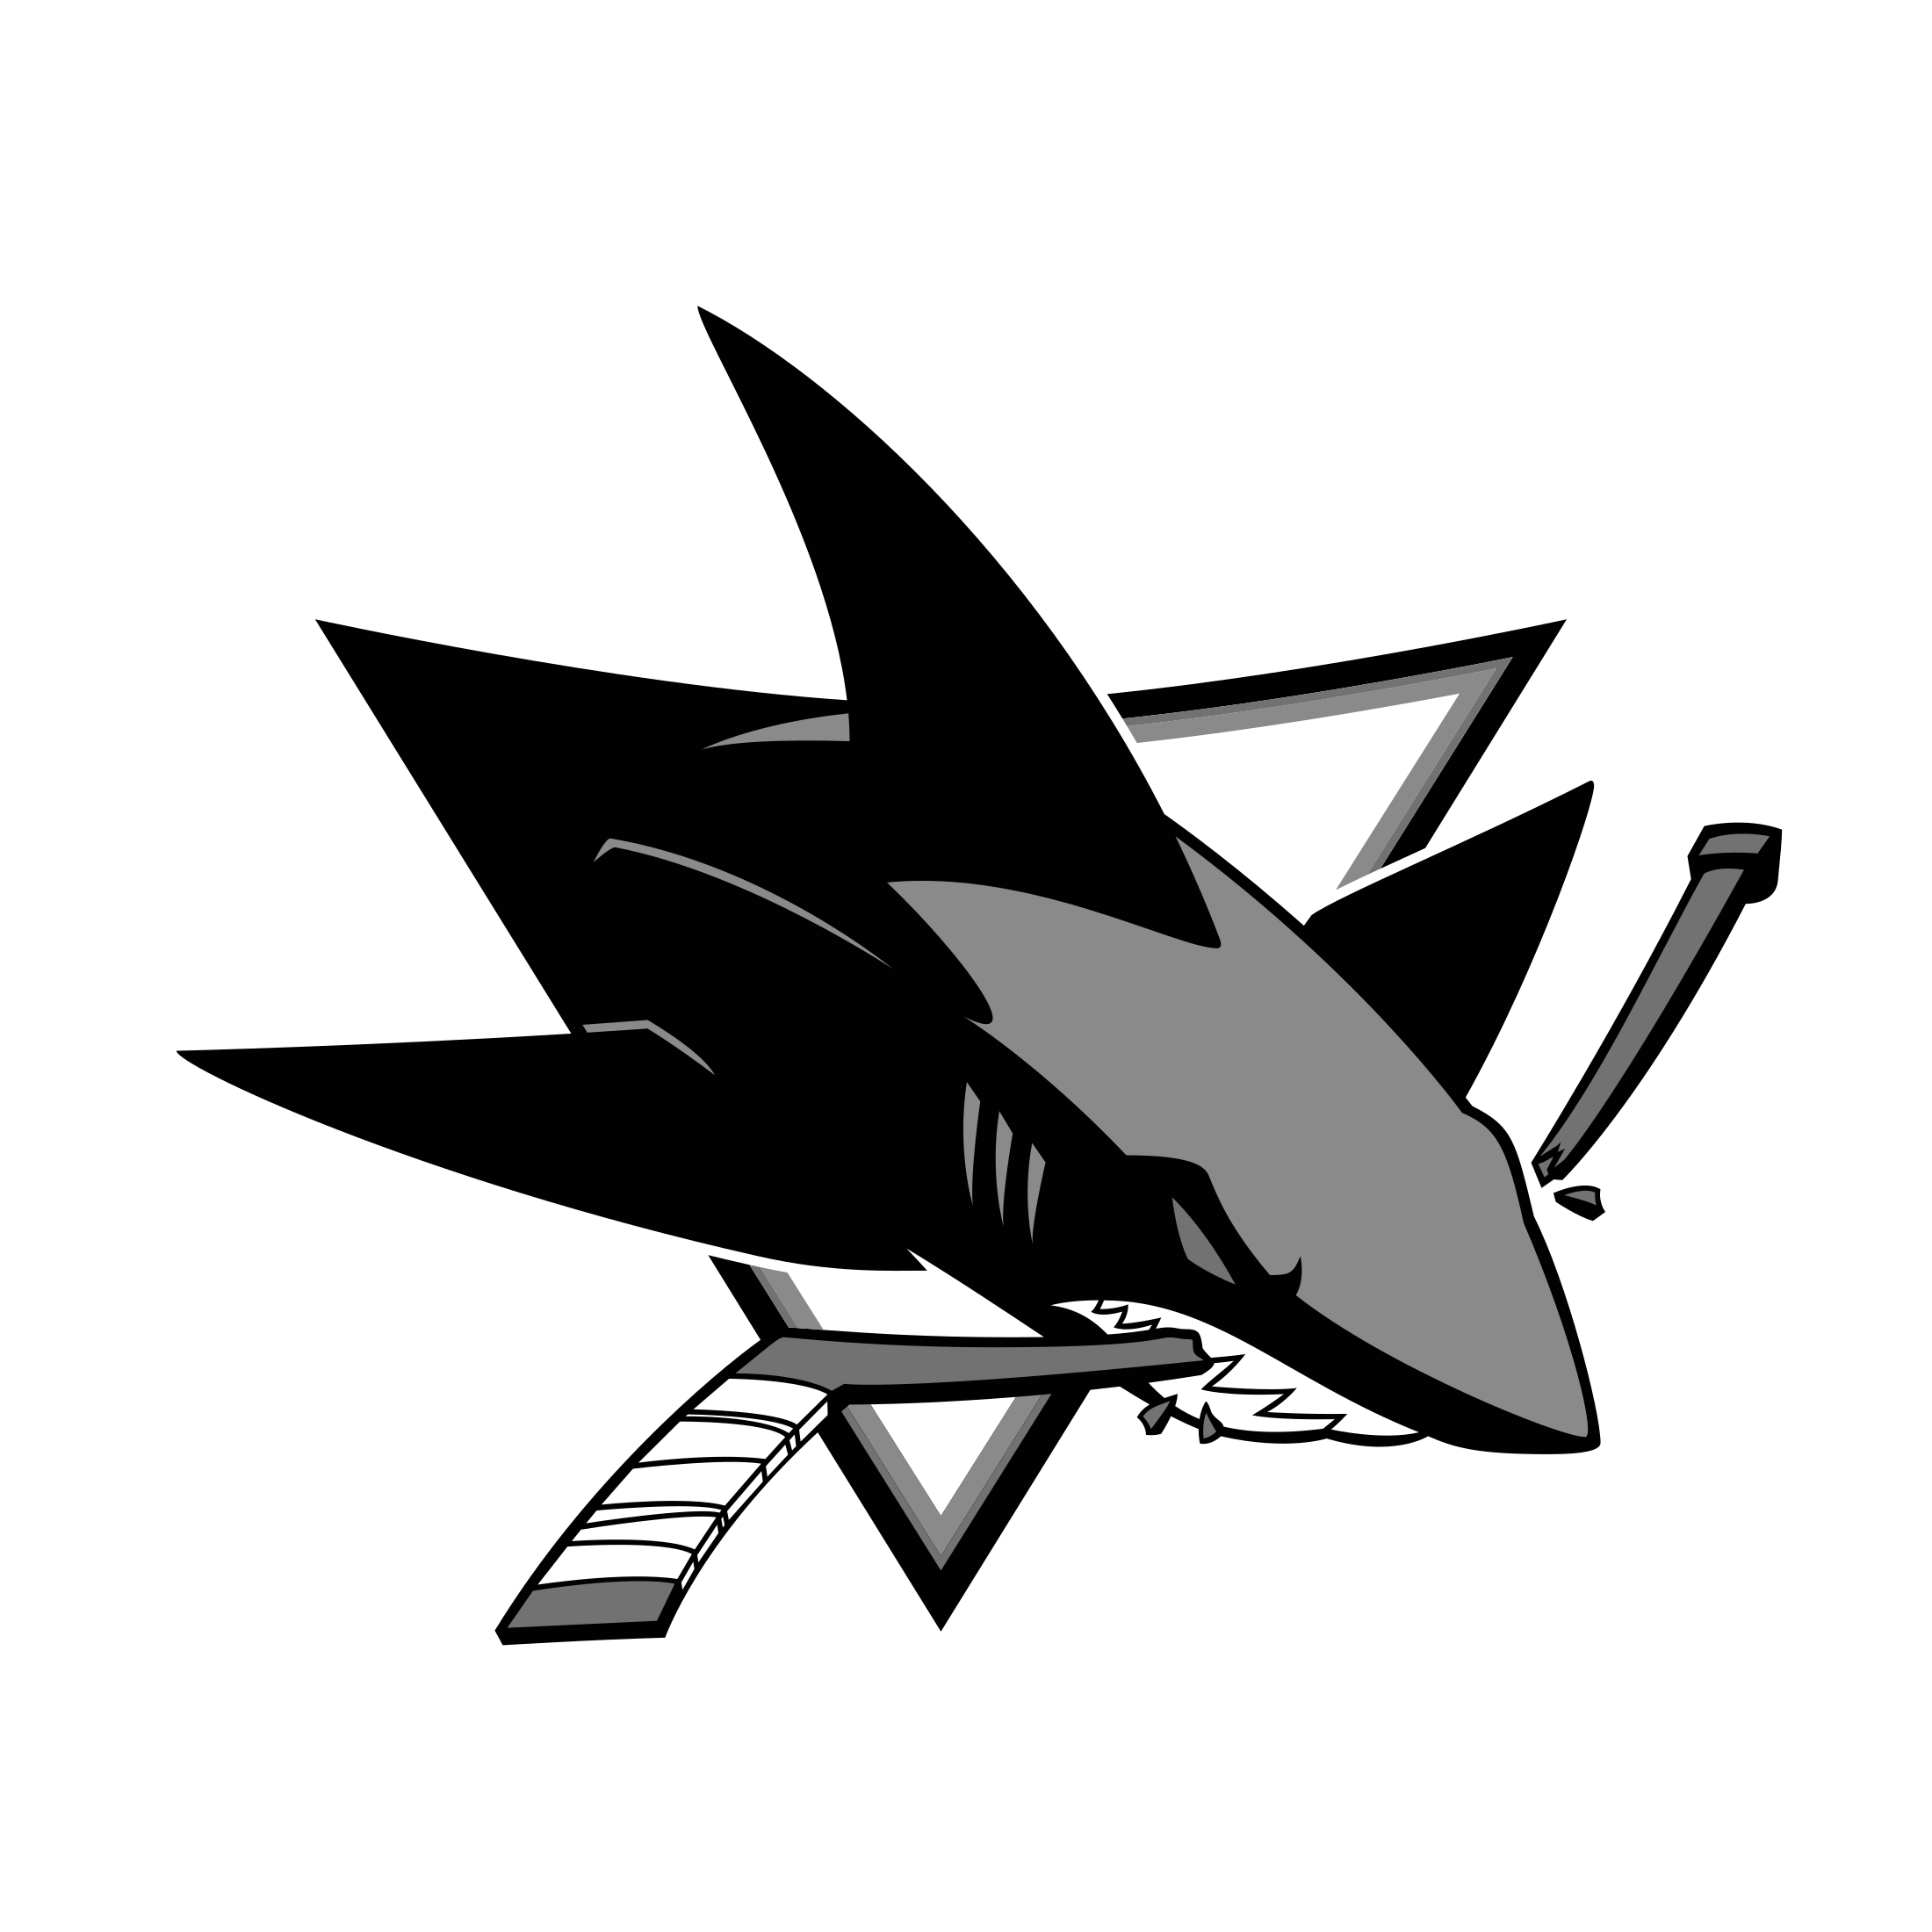 San Jose Sharks Logo Vector at Vectorified.com | Collection of San Jose ...